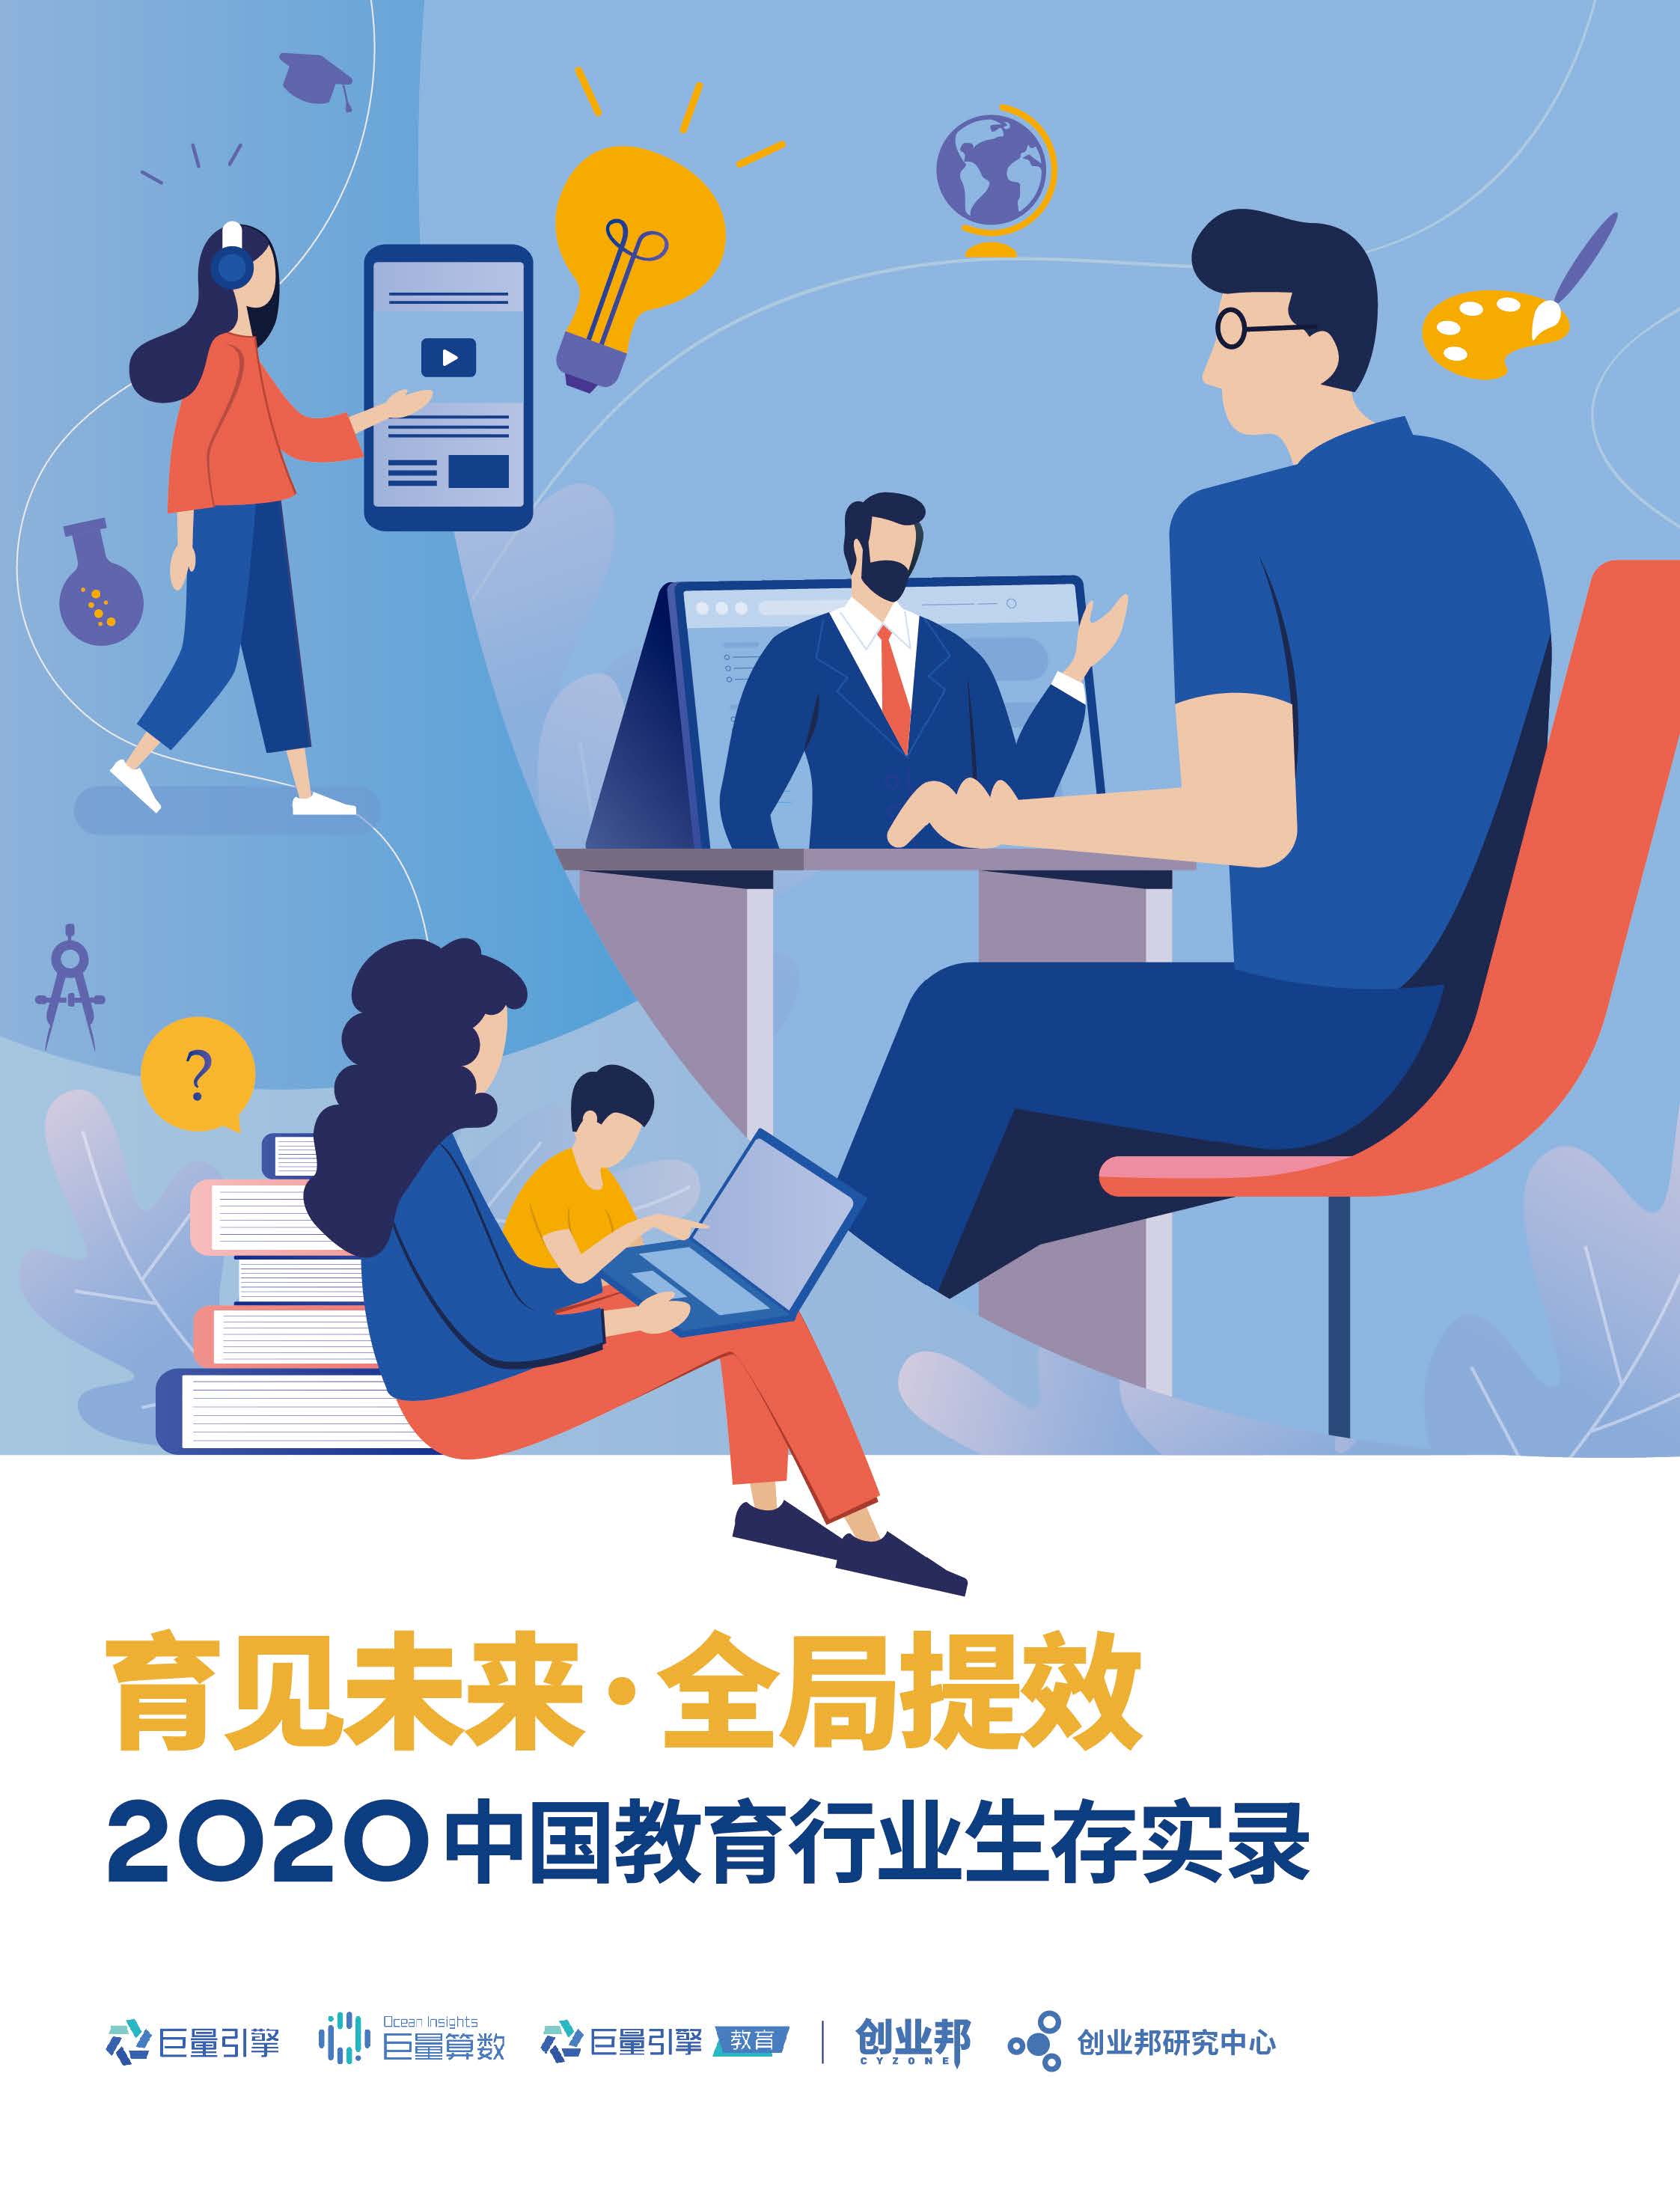 育见未来 全局提效——2020中国教育行业生存实录